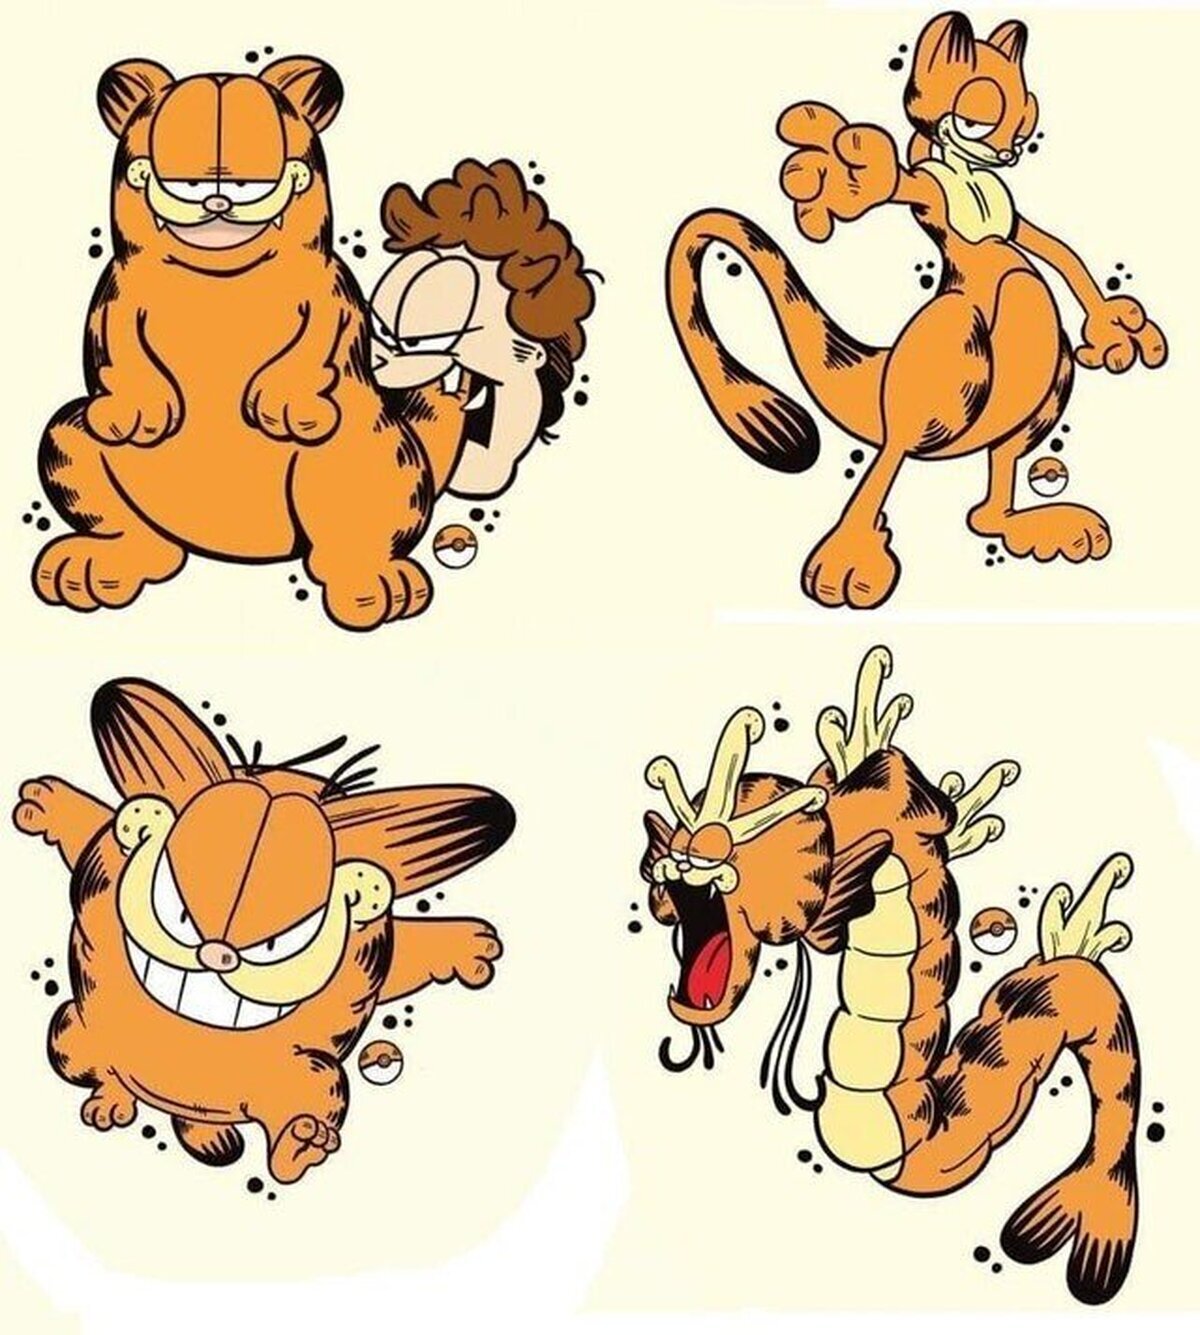 Lo que pasa cuando mezclas Garfield y Pokémon